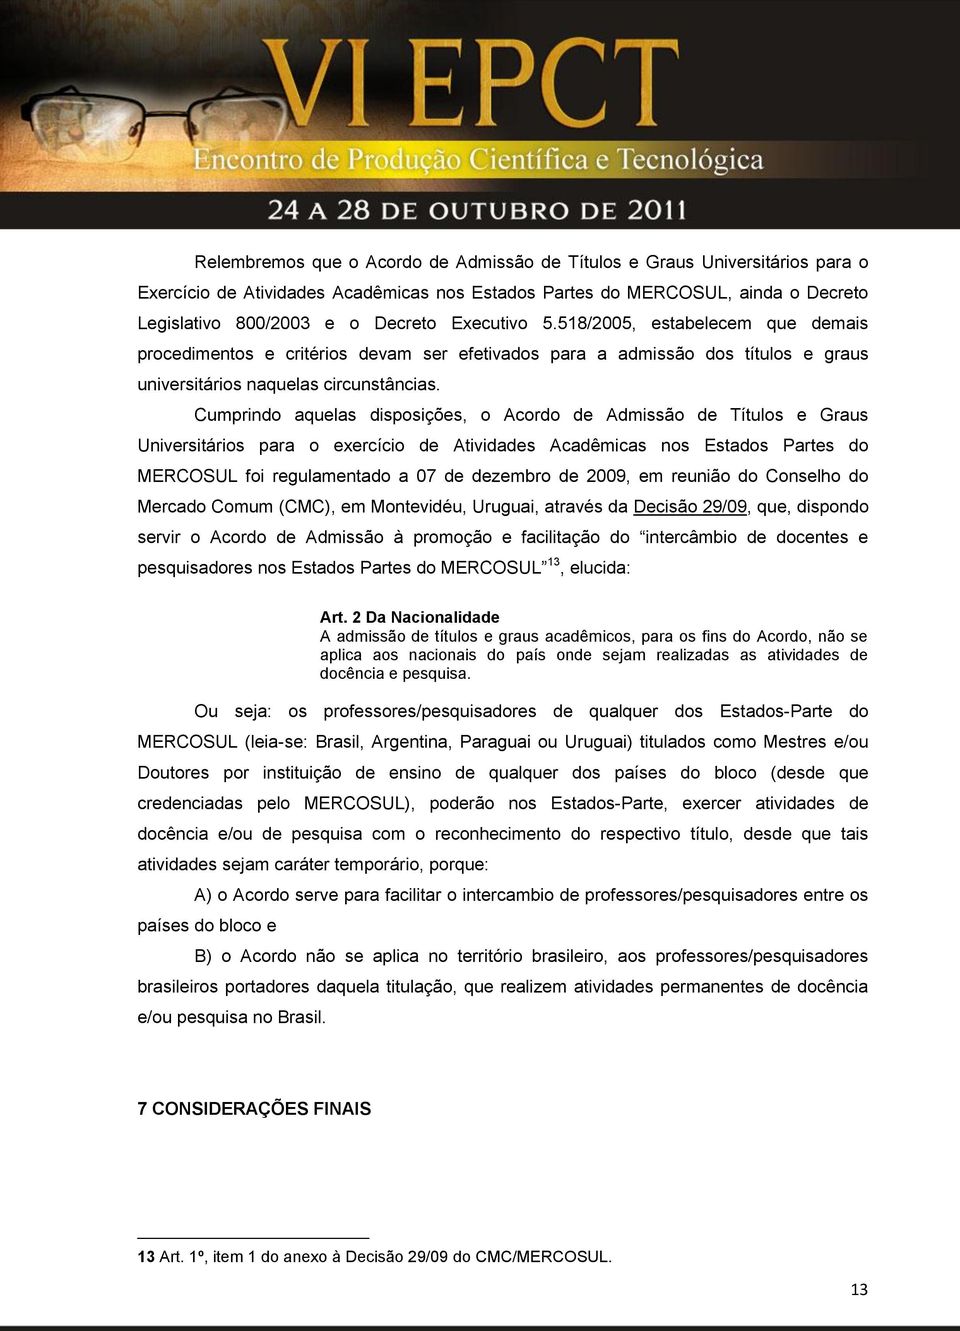 Cumprindo aquelas disposições, o Acordo de Admissão de Títulos e Graus Universitários para o exercício de Atividades Acadêmicas nos Estados Partes do MERCOSUL foi regulamentado a 07 de dezembro de